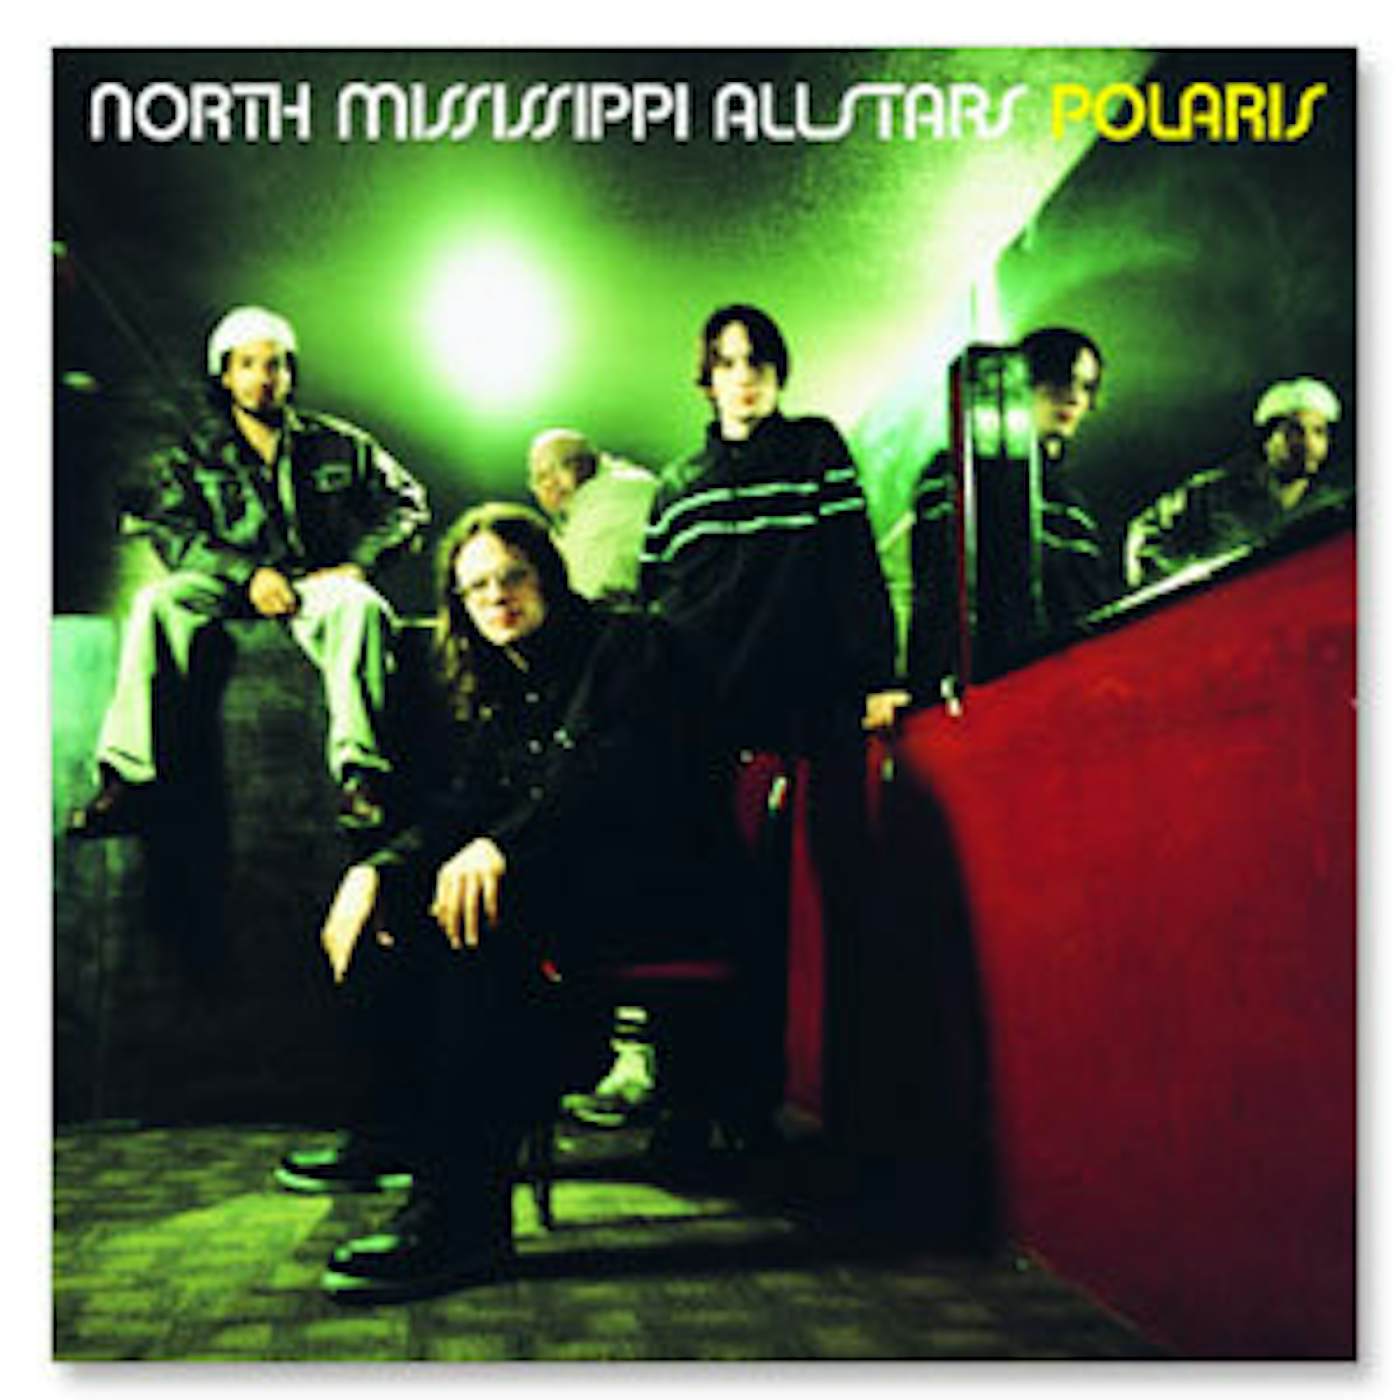 North Mississippi Allstars - Polaris CD